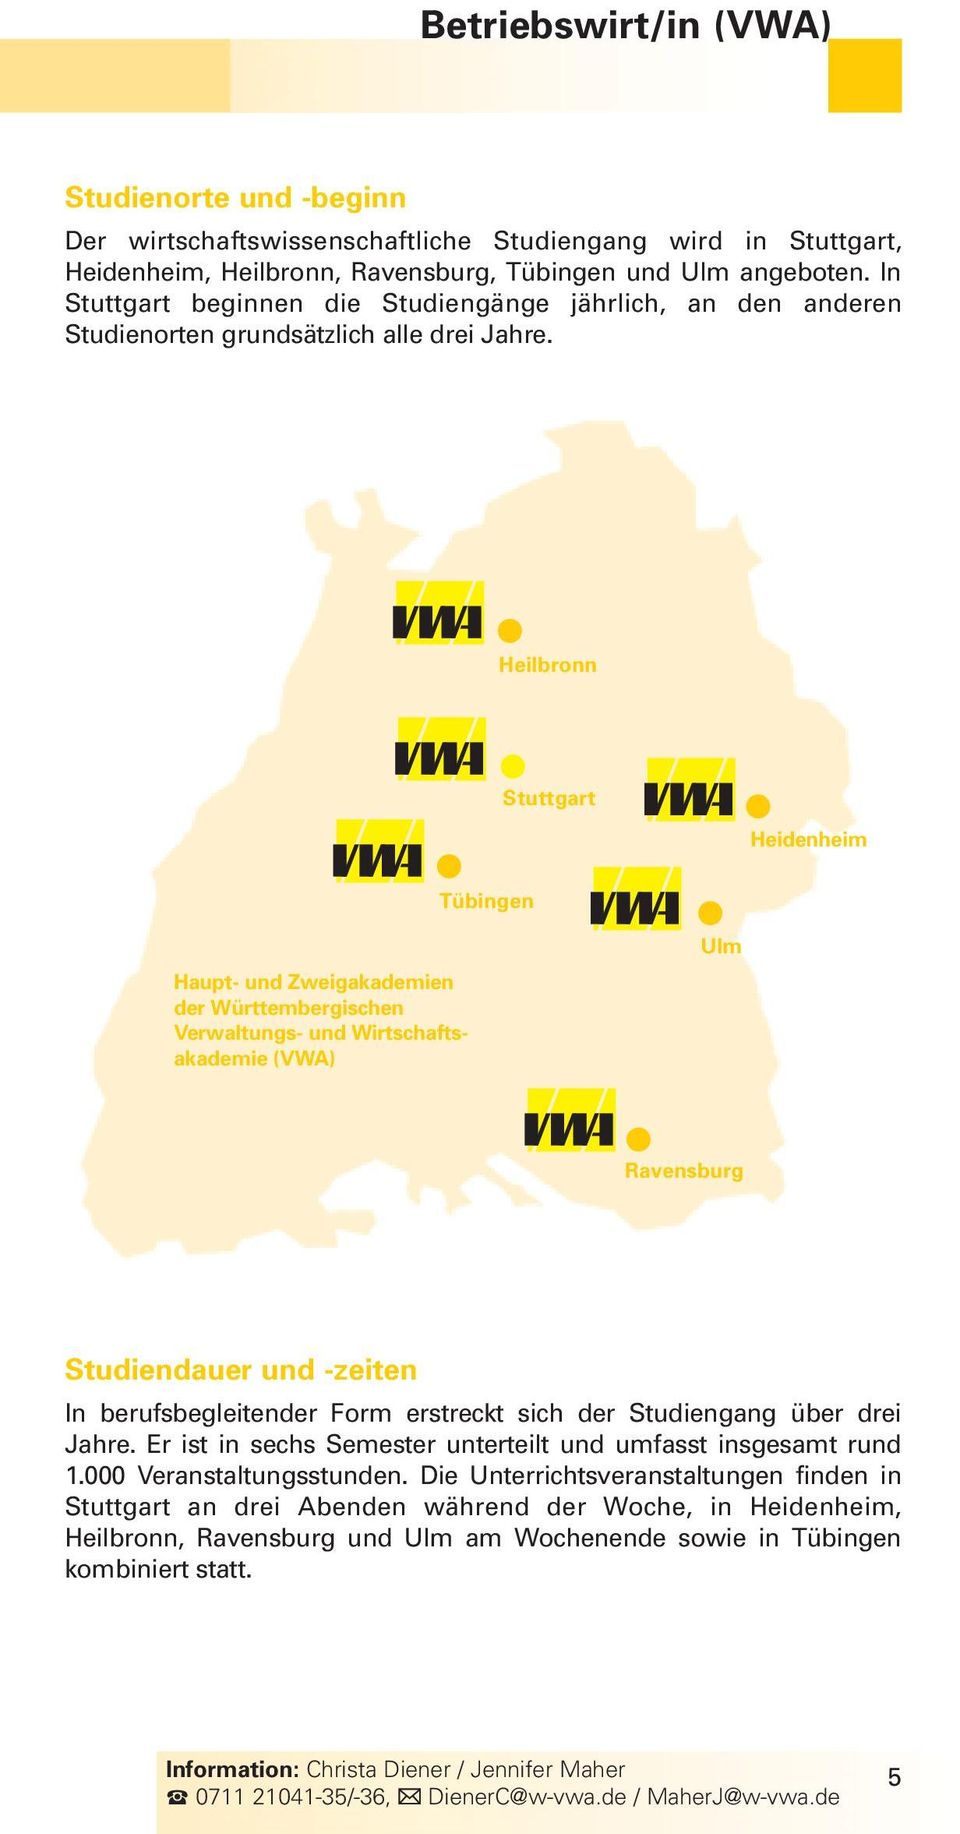 Heilbronn Stuttgart Heidenheim Tübingen Haupt- und Zweigakademien der Württembergischen Verwaltungs- und Wirtschaftsakademie (VWA) Ulm Ravensburg Studiendauer und -zeiten In berufsbegleitender Form